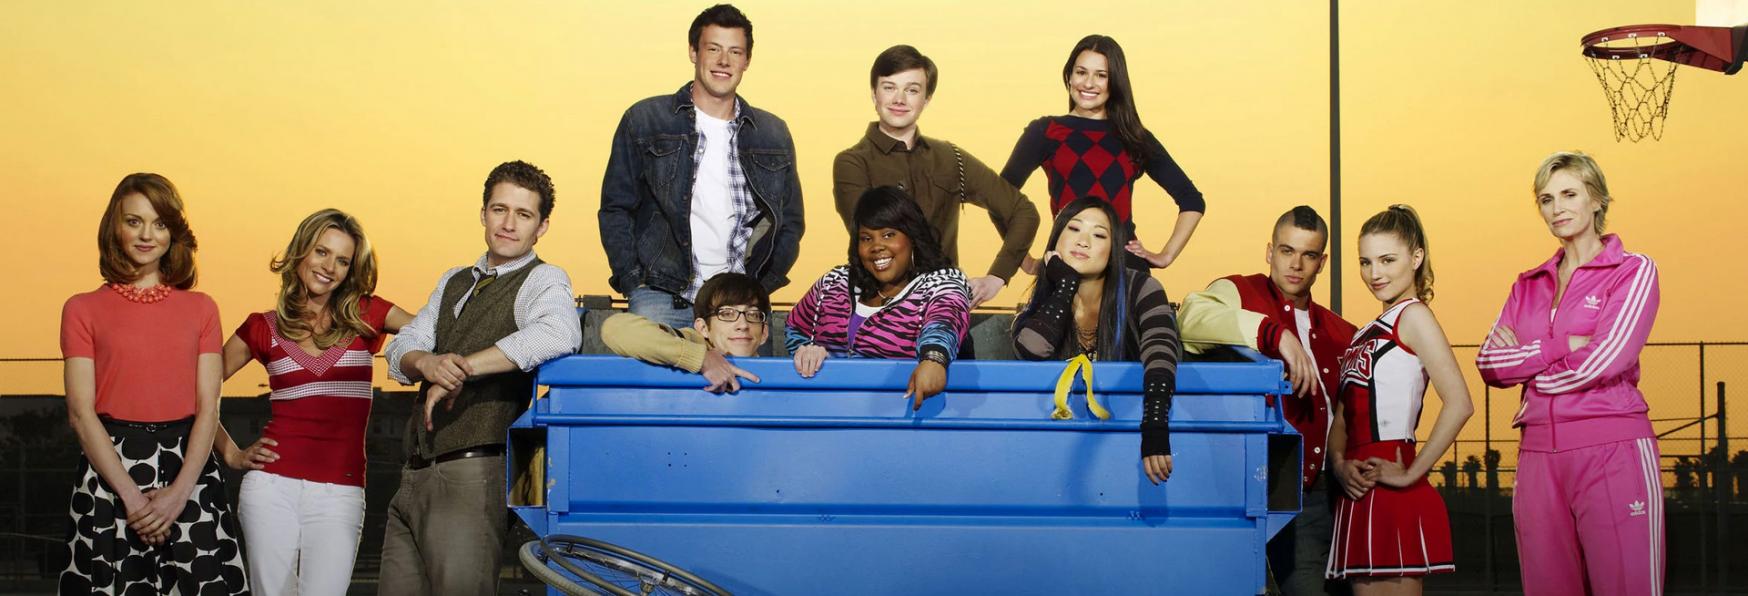 Glee: il Presidente di FOX parla di un Possibile Revival della Serie TV